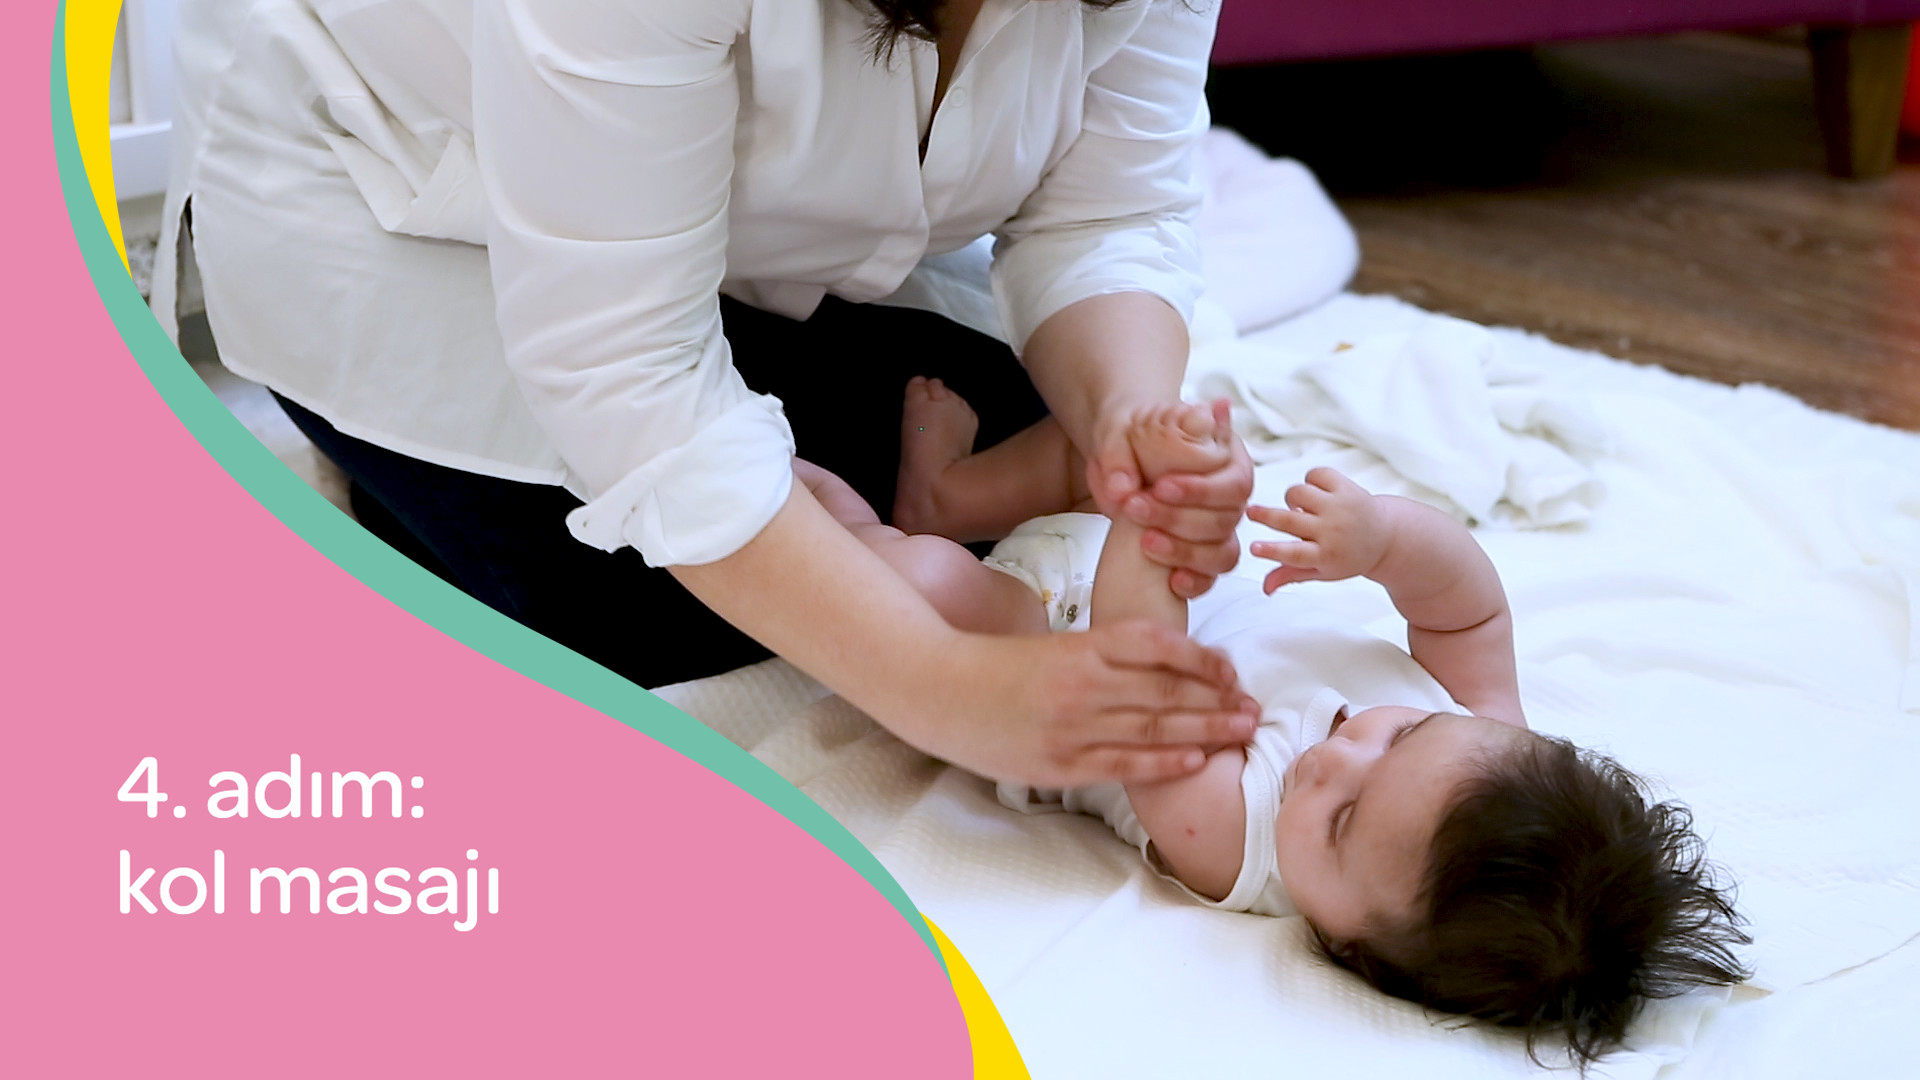 bebek masajı nasıl yapılır? dördüncü adım: kol masajı